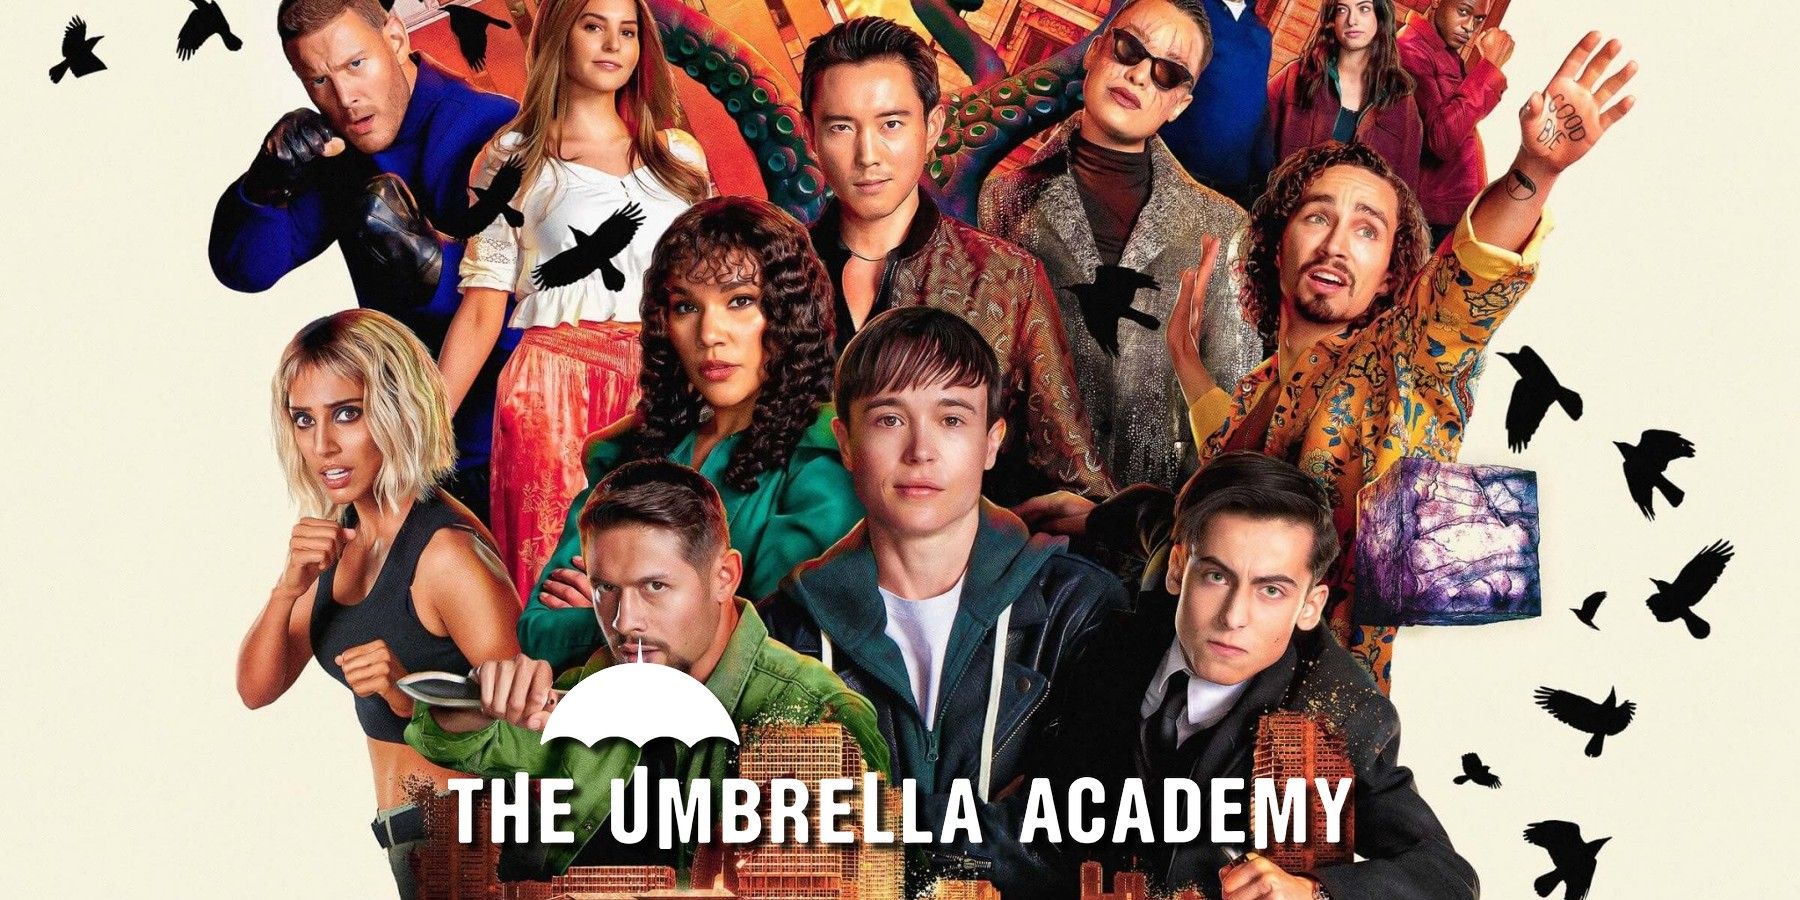 Umbrella Academy Netflix season 3